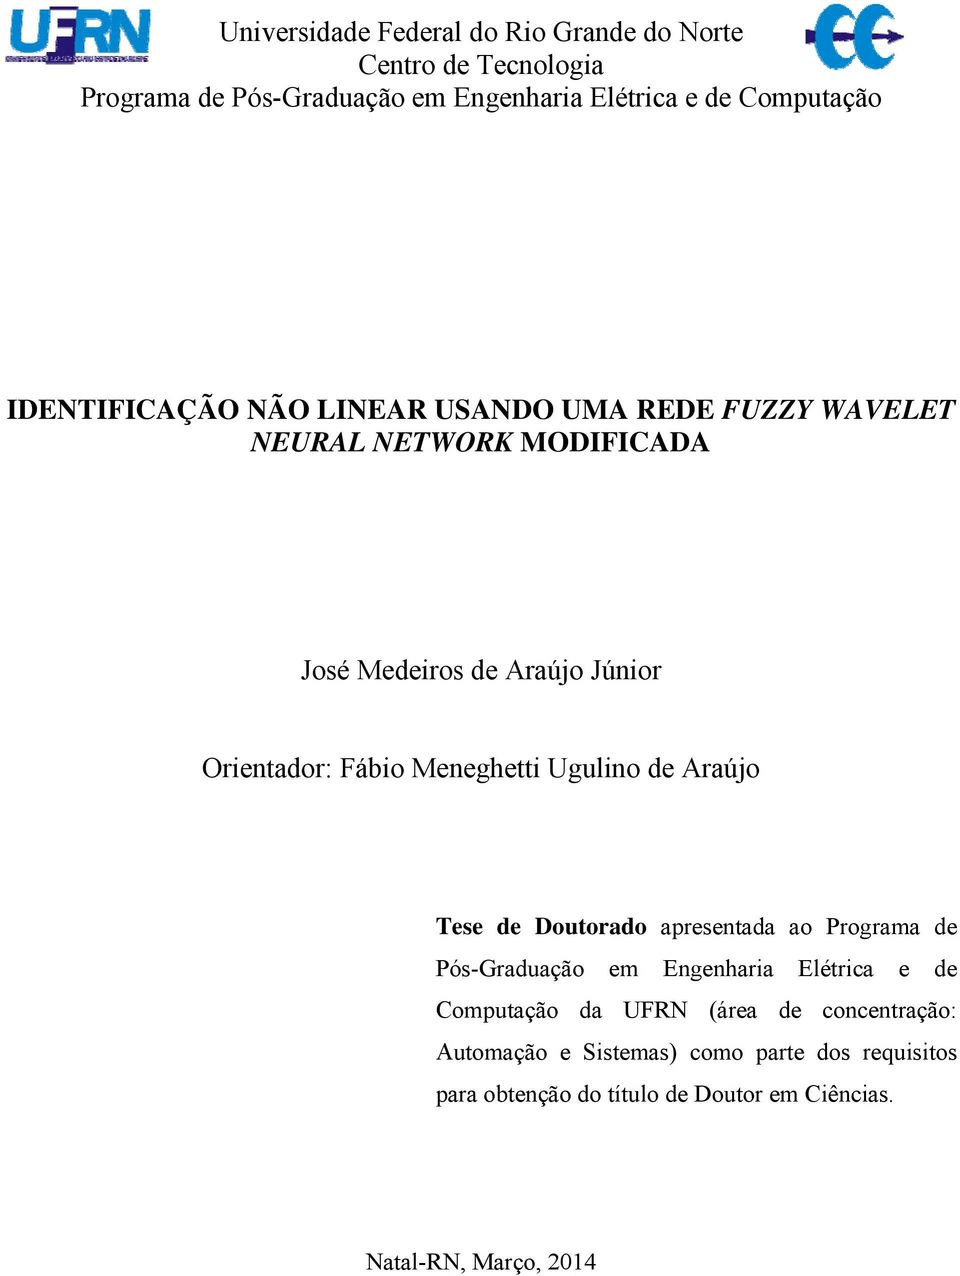 Meneghett Ugulno de Araújo Tese de Doutorado apresentada ao Programa de Pós-Graduação em Engenhara Elétrca e de Computação da